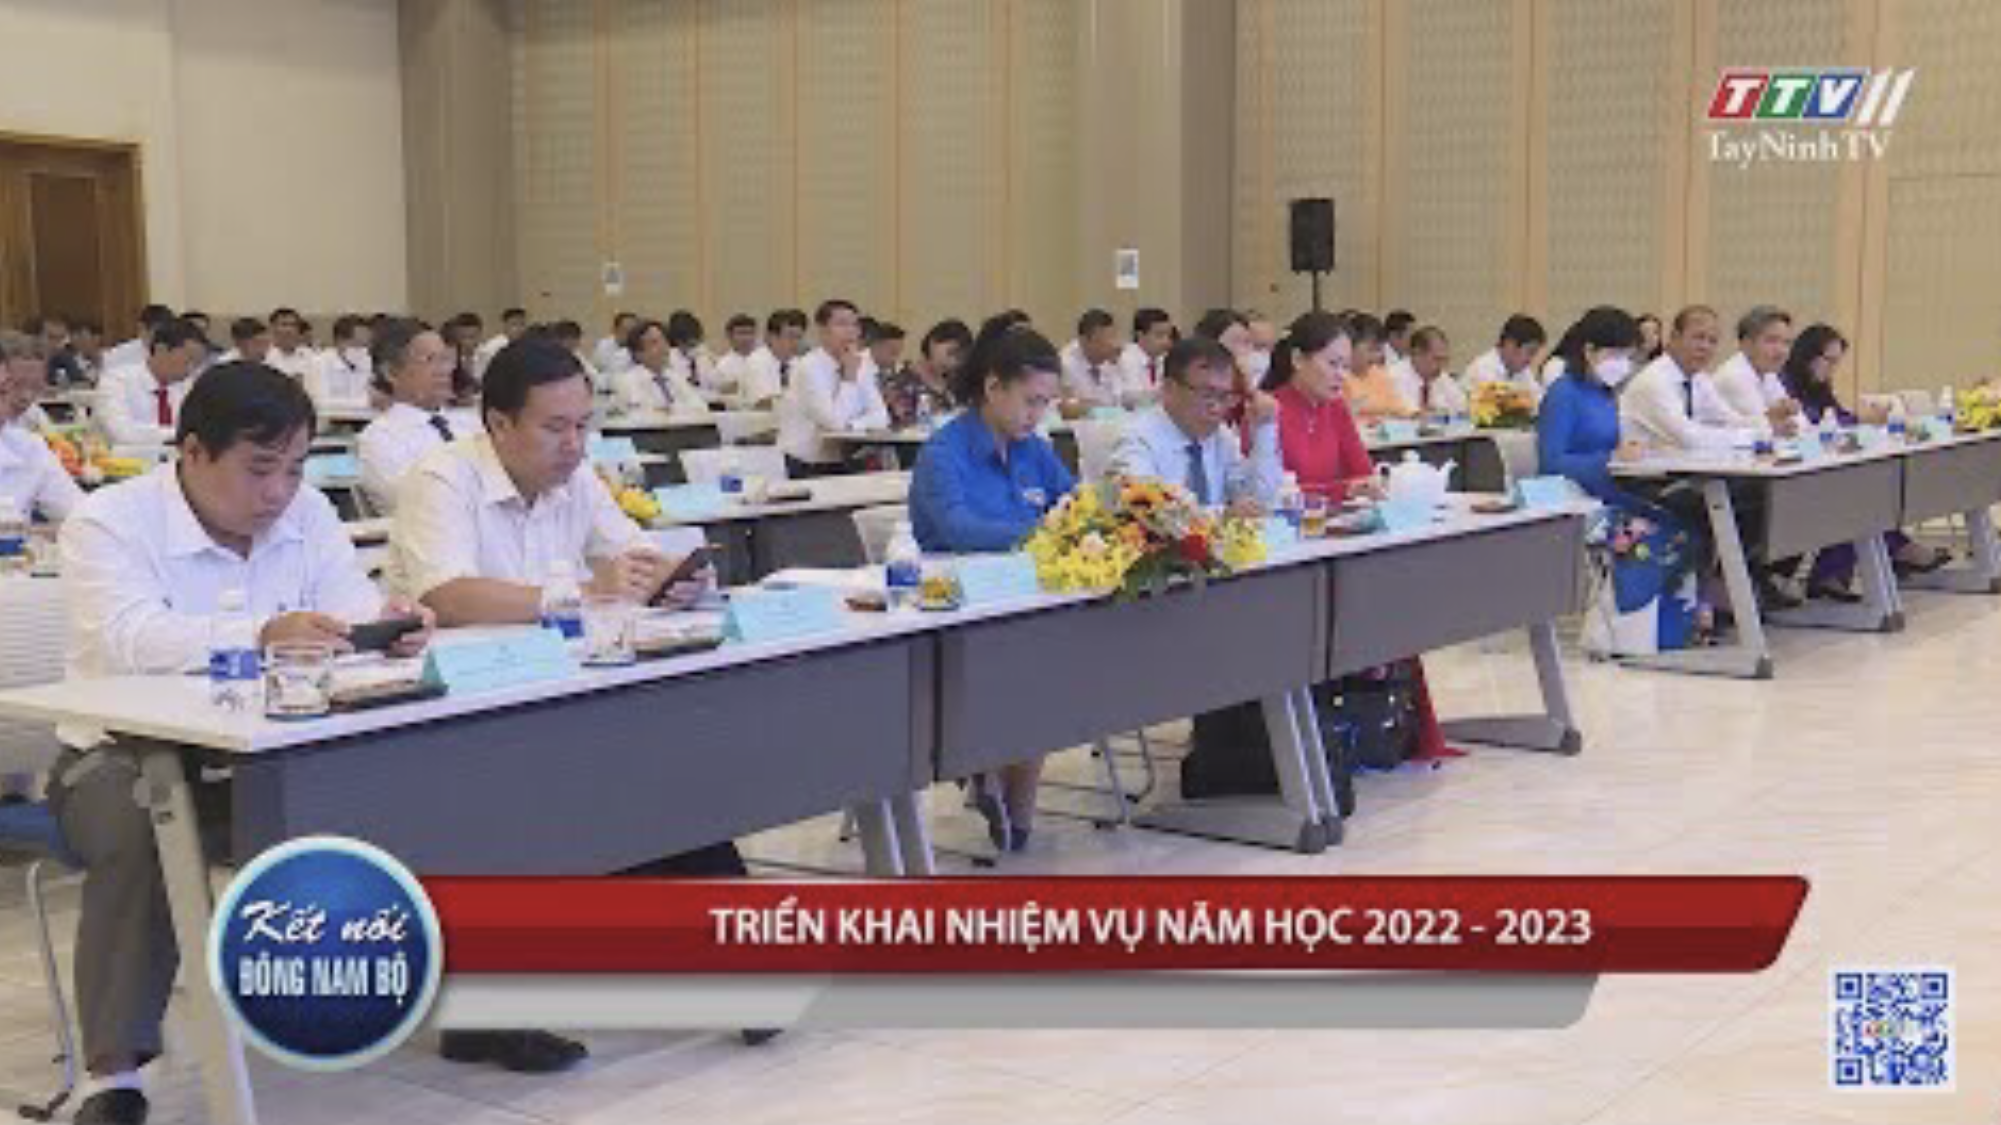 Triển khai nhiệm vụ năm học 2022 - 2023 | KẾT NỐI ĐÔNG NAM BỘ | TayNinhTV